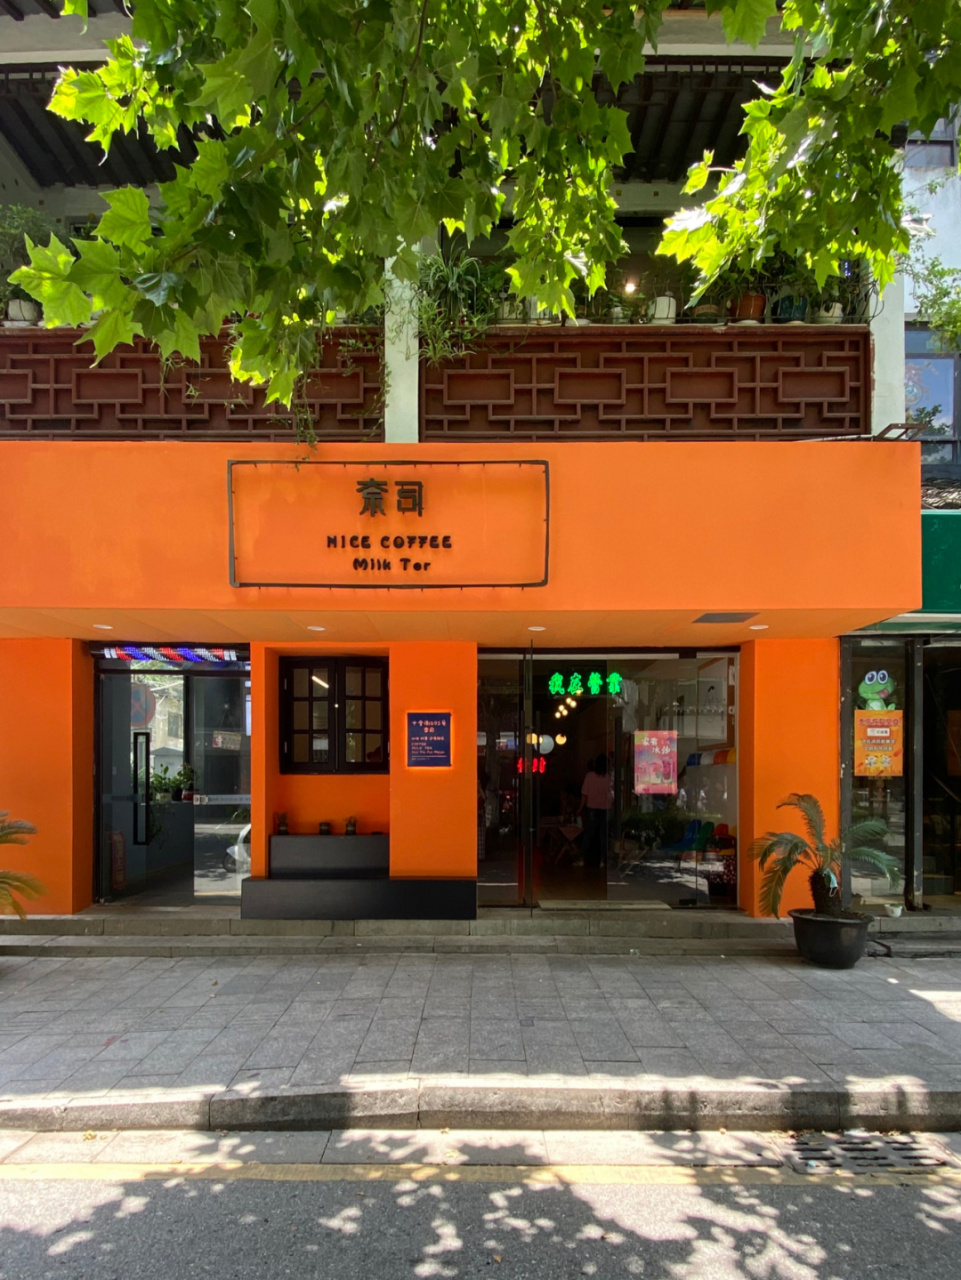 苏州探店丨十全街宝藏童趣复古咖啡店 96路过被店的橙色门头吸引